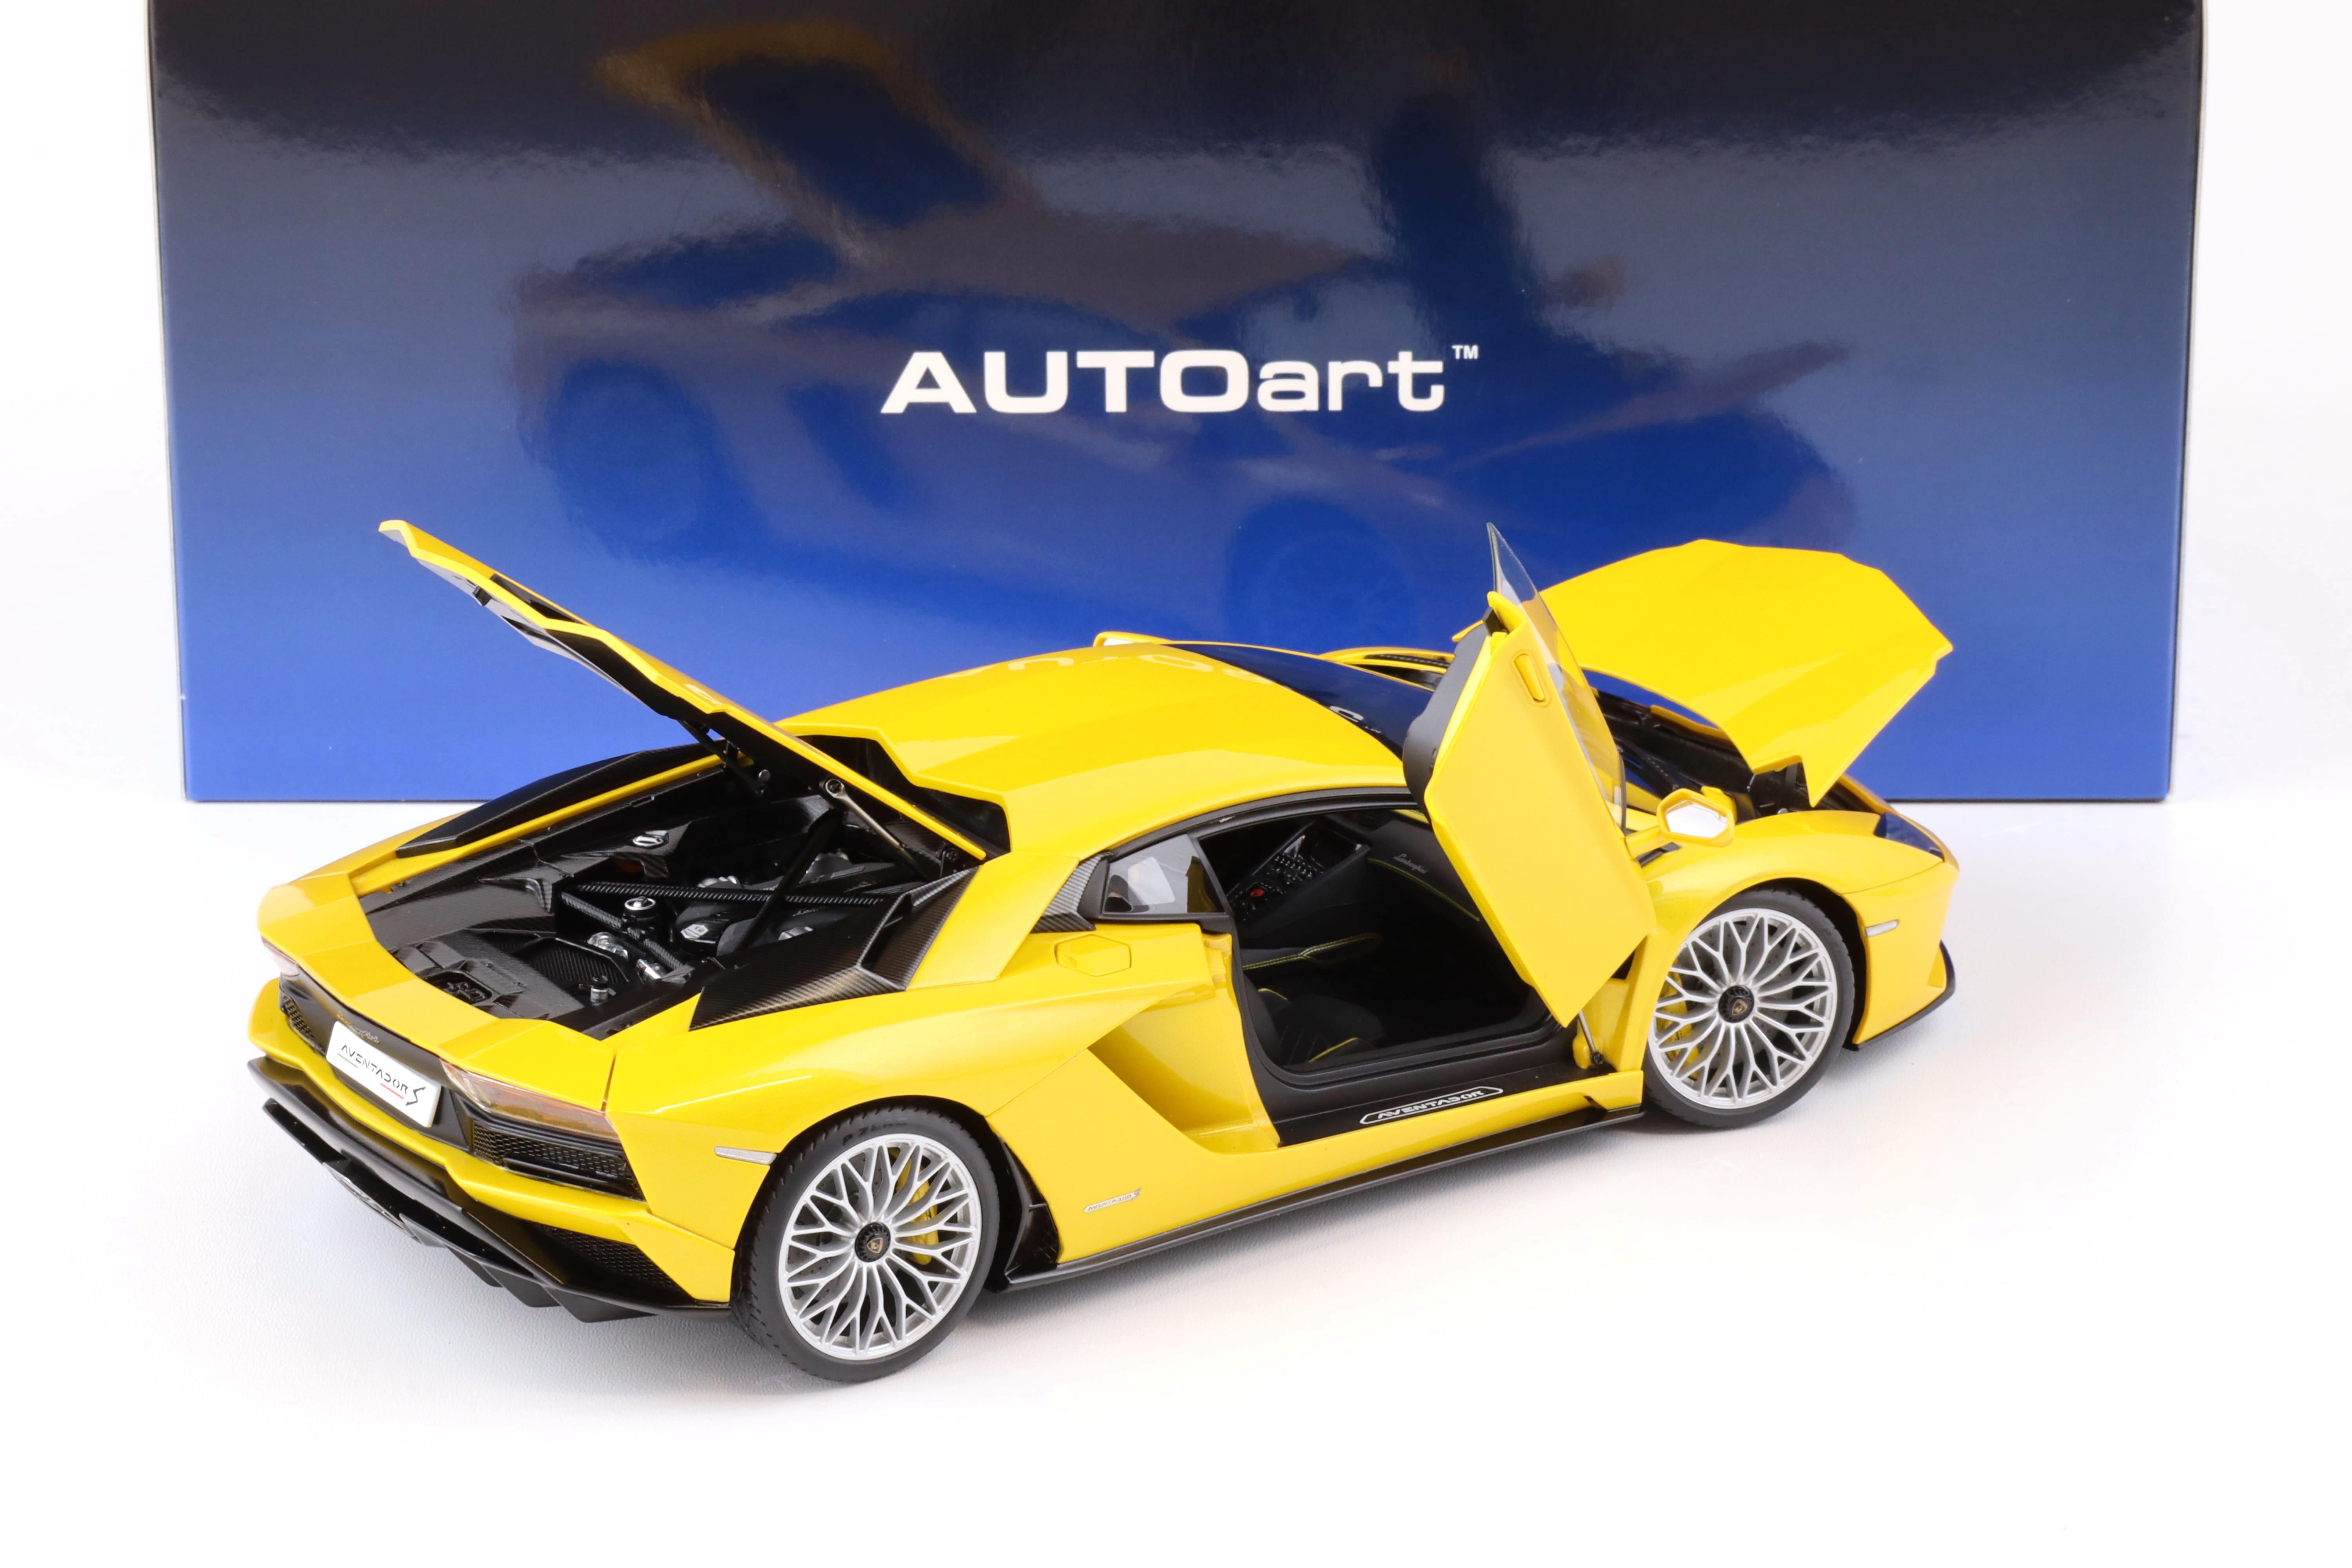 1:18 AUTOart Lamborghini Aventador S Coupe 2017 New Giallo Orion/ yellow 79132